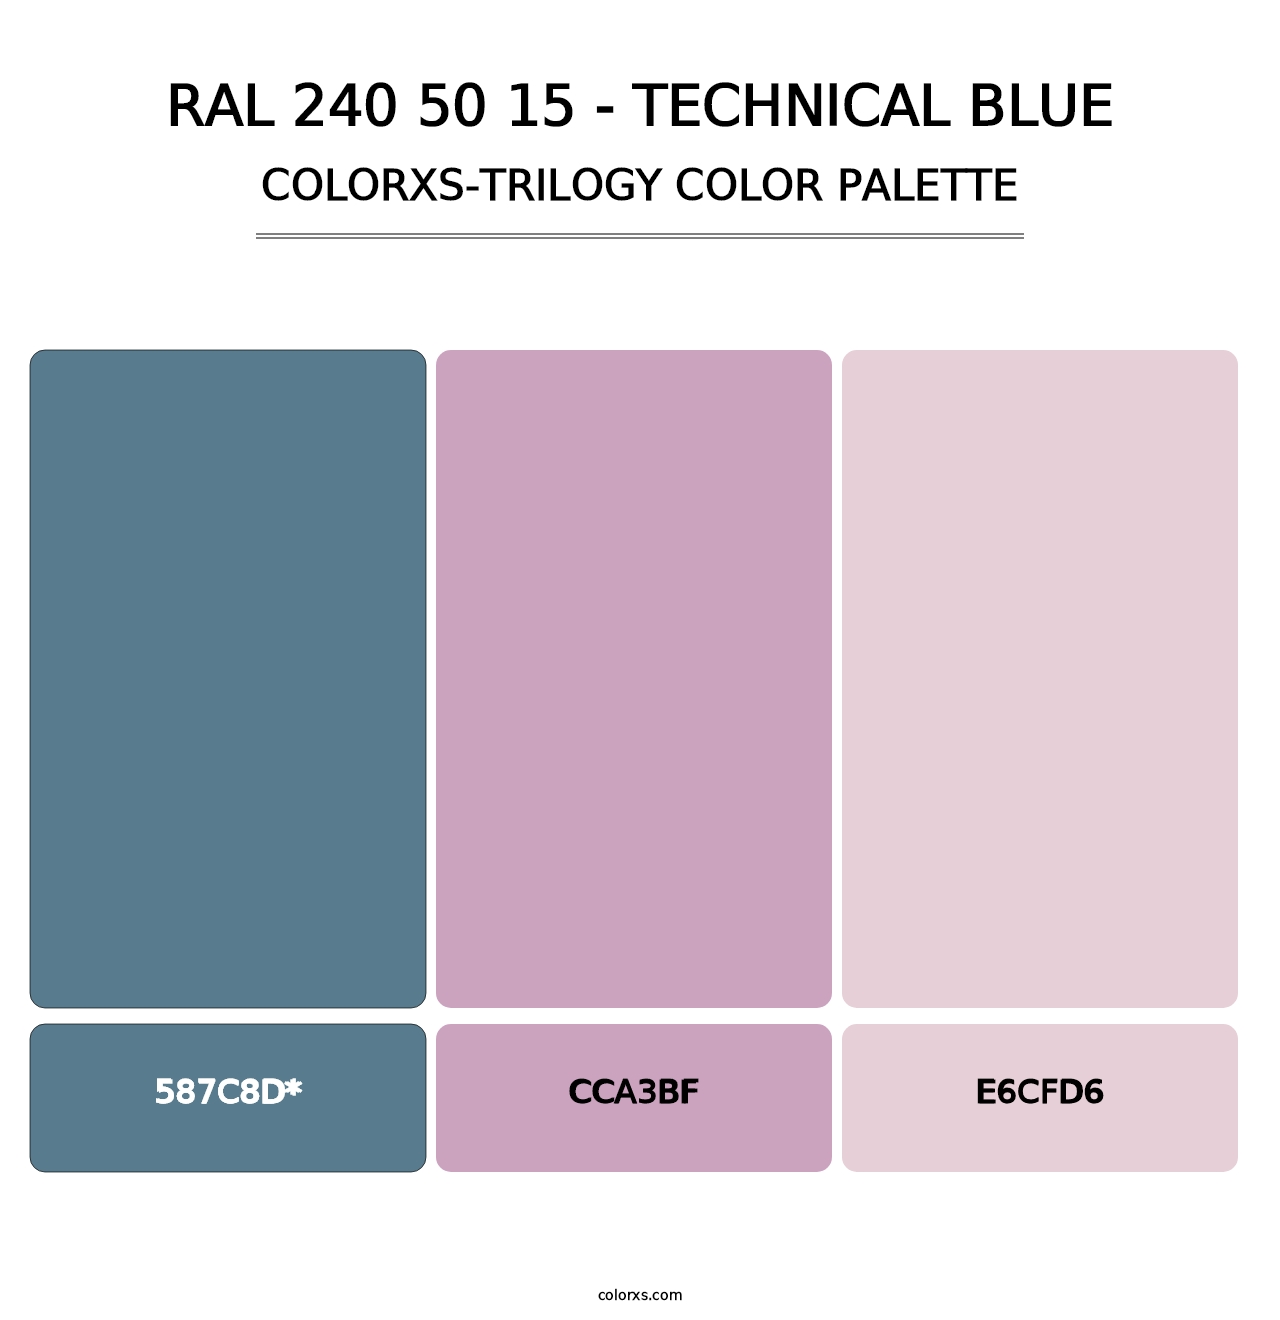 RAL 240 50 15 - Technical Blue - Colorxs Trilogy Palette